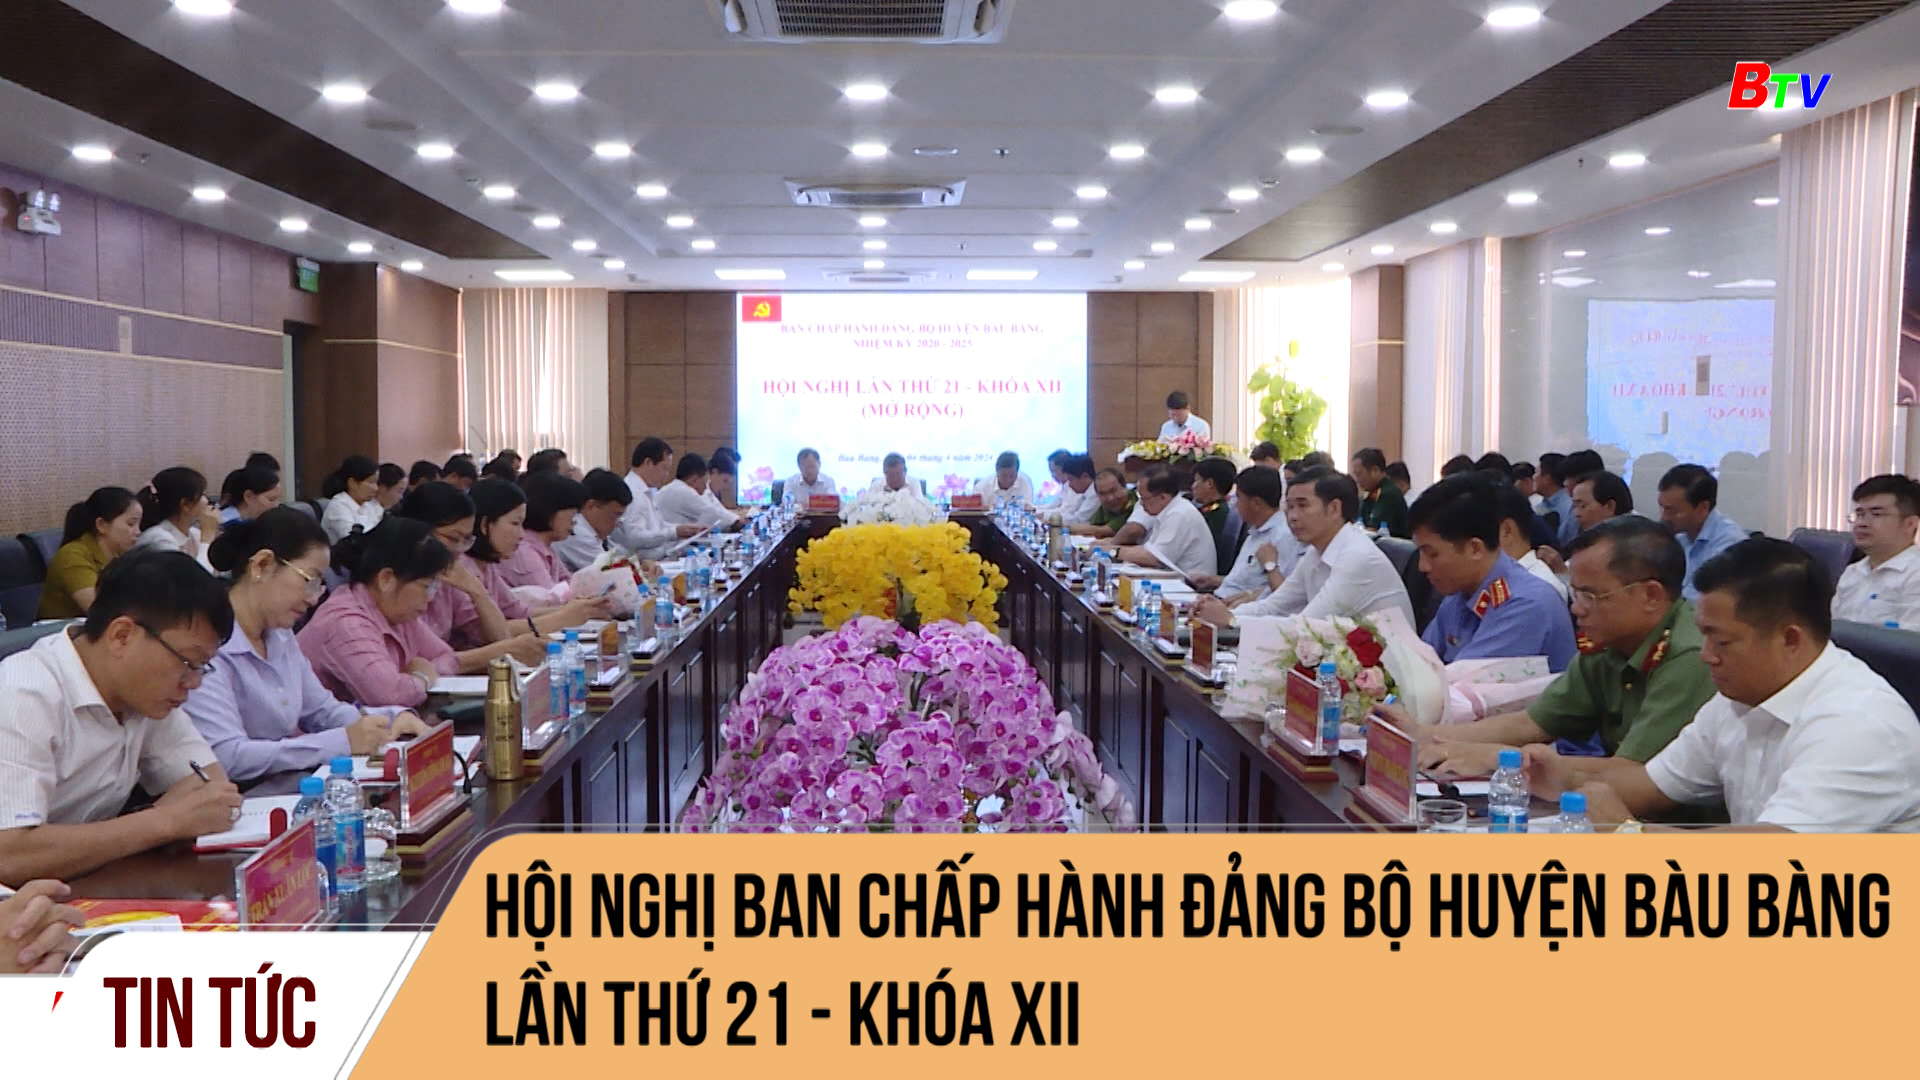 Hội nghị Ban chấp hành Đảng bộ huyện Bàu Bàng lần thứ 21 - khóa XII	